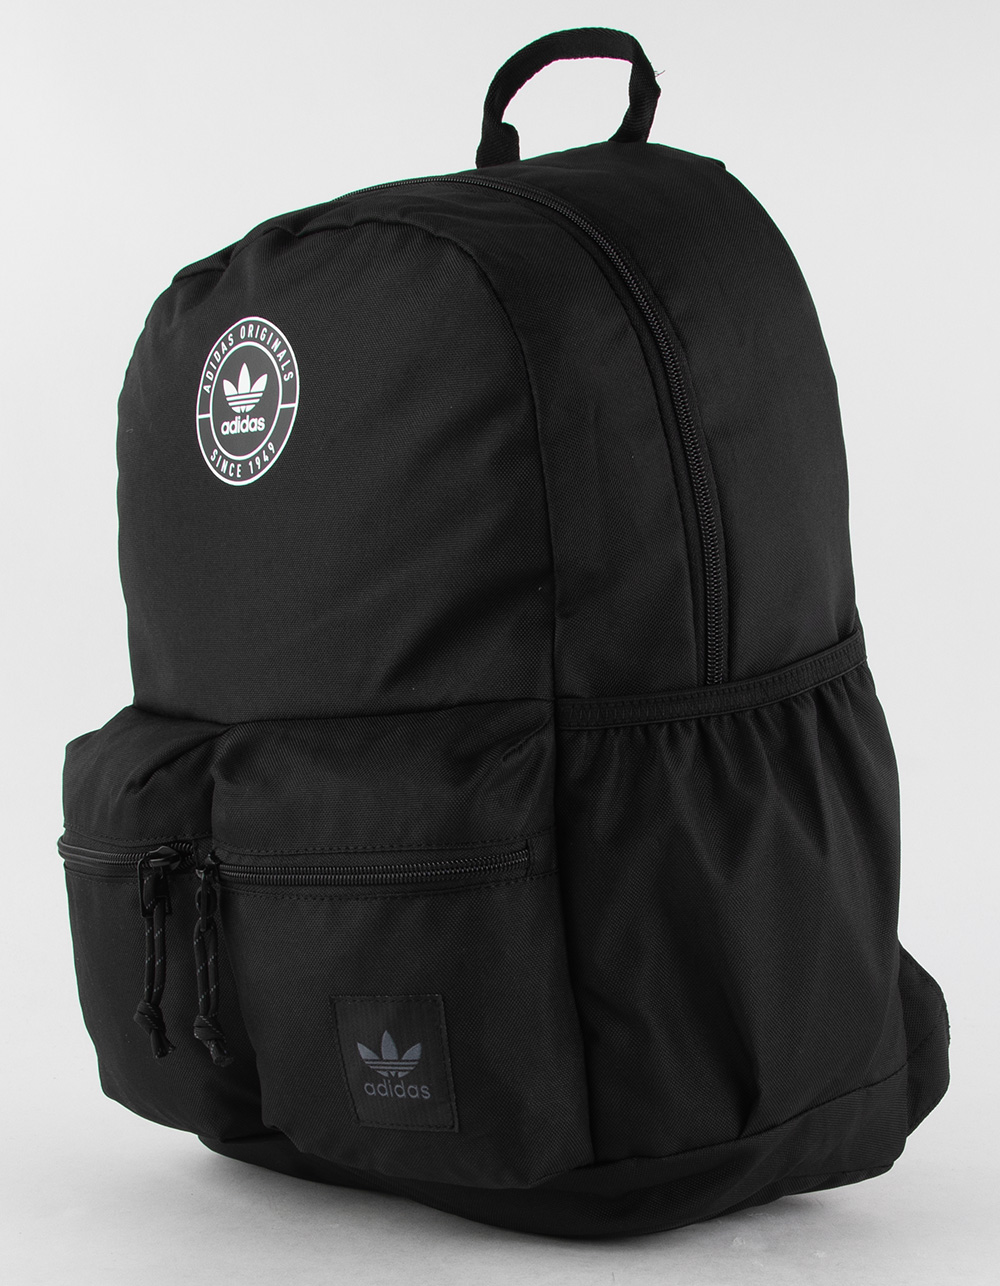 ADIDAS Originals Trefoil Backpack - BLK/WHT Tillys